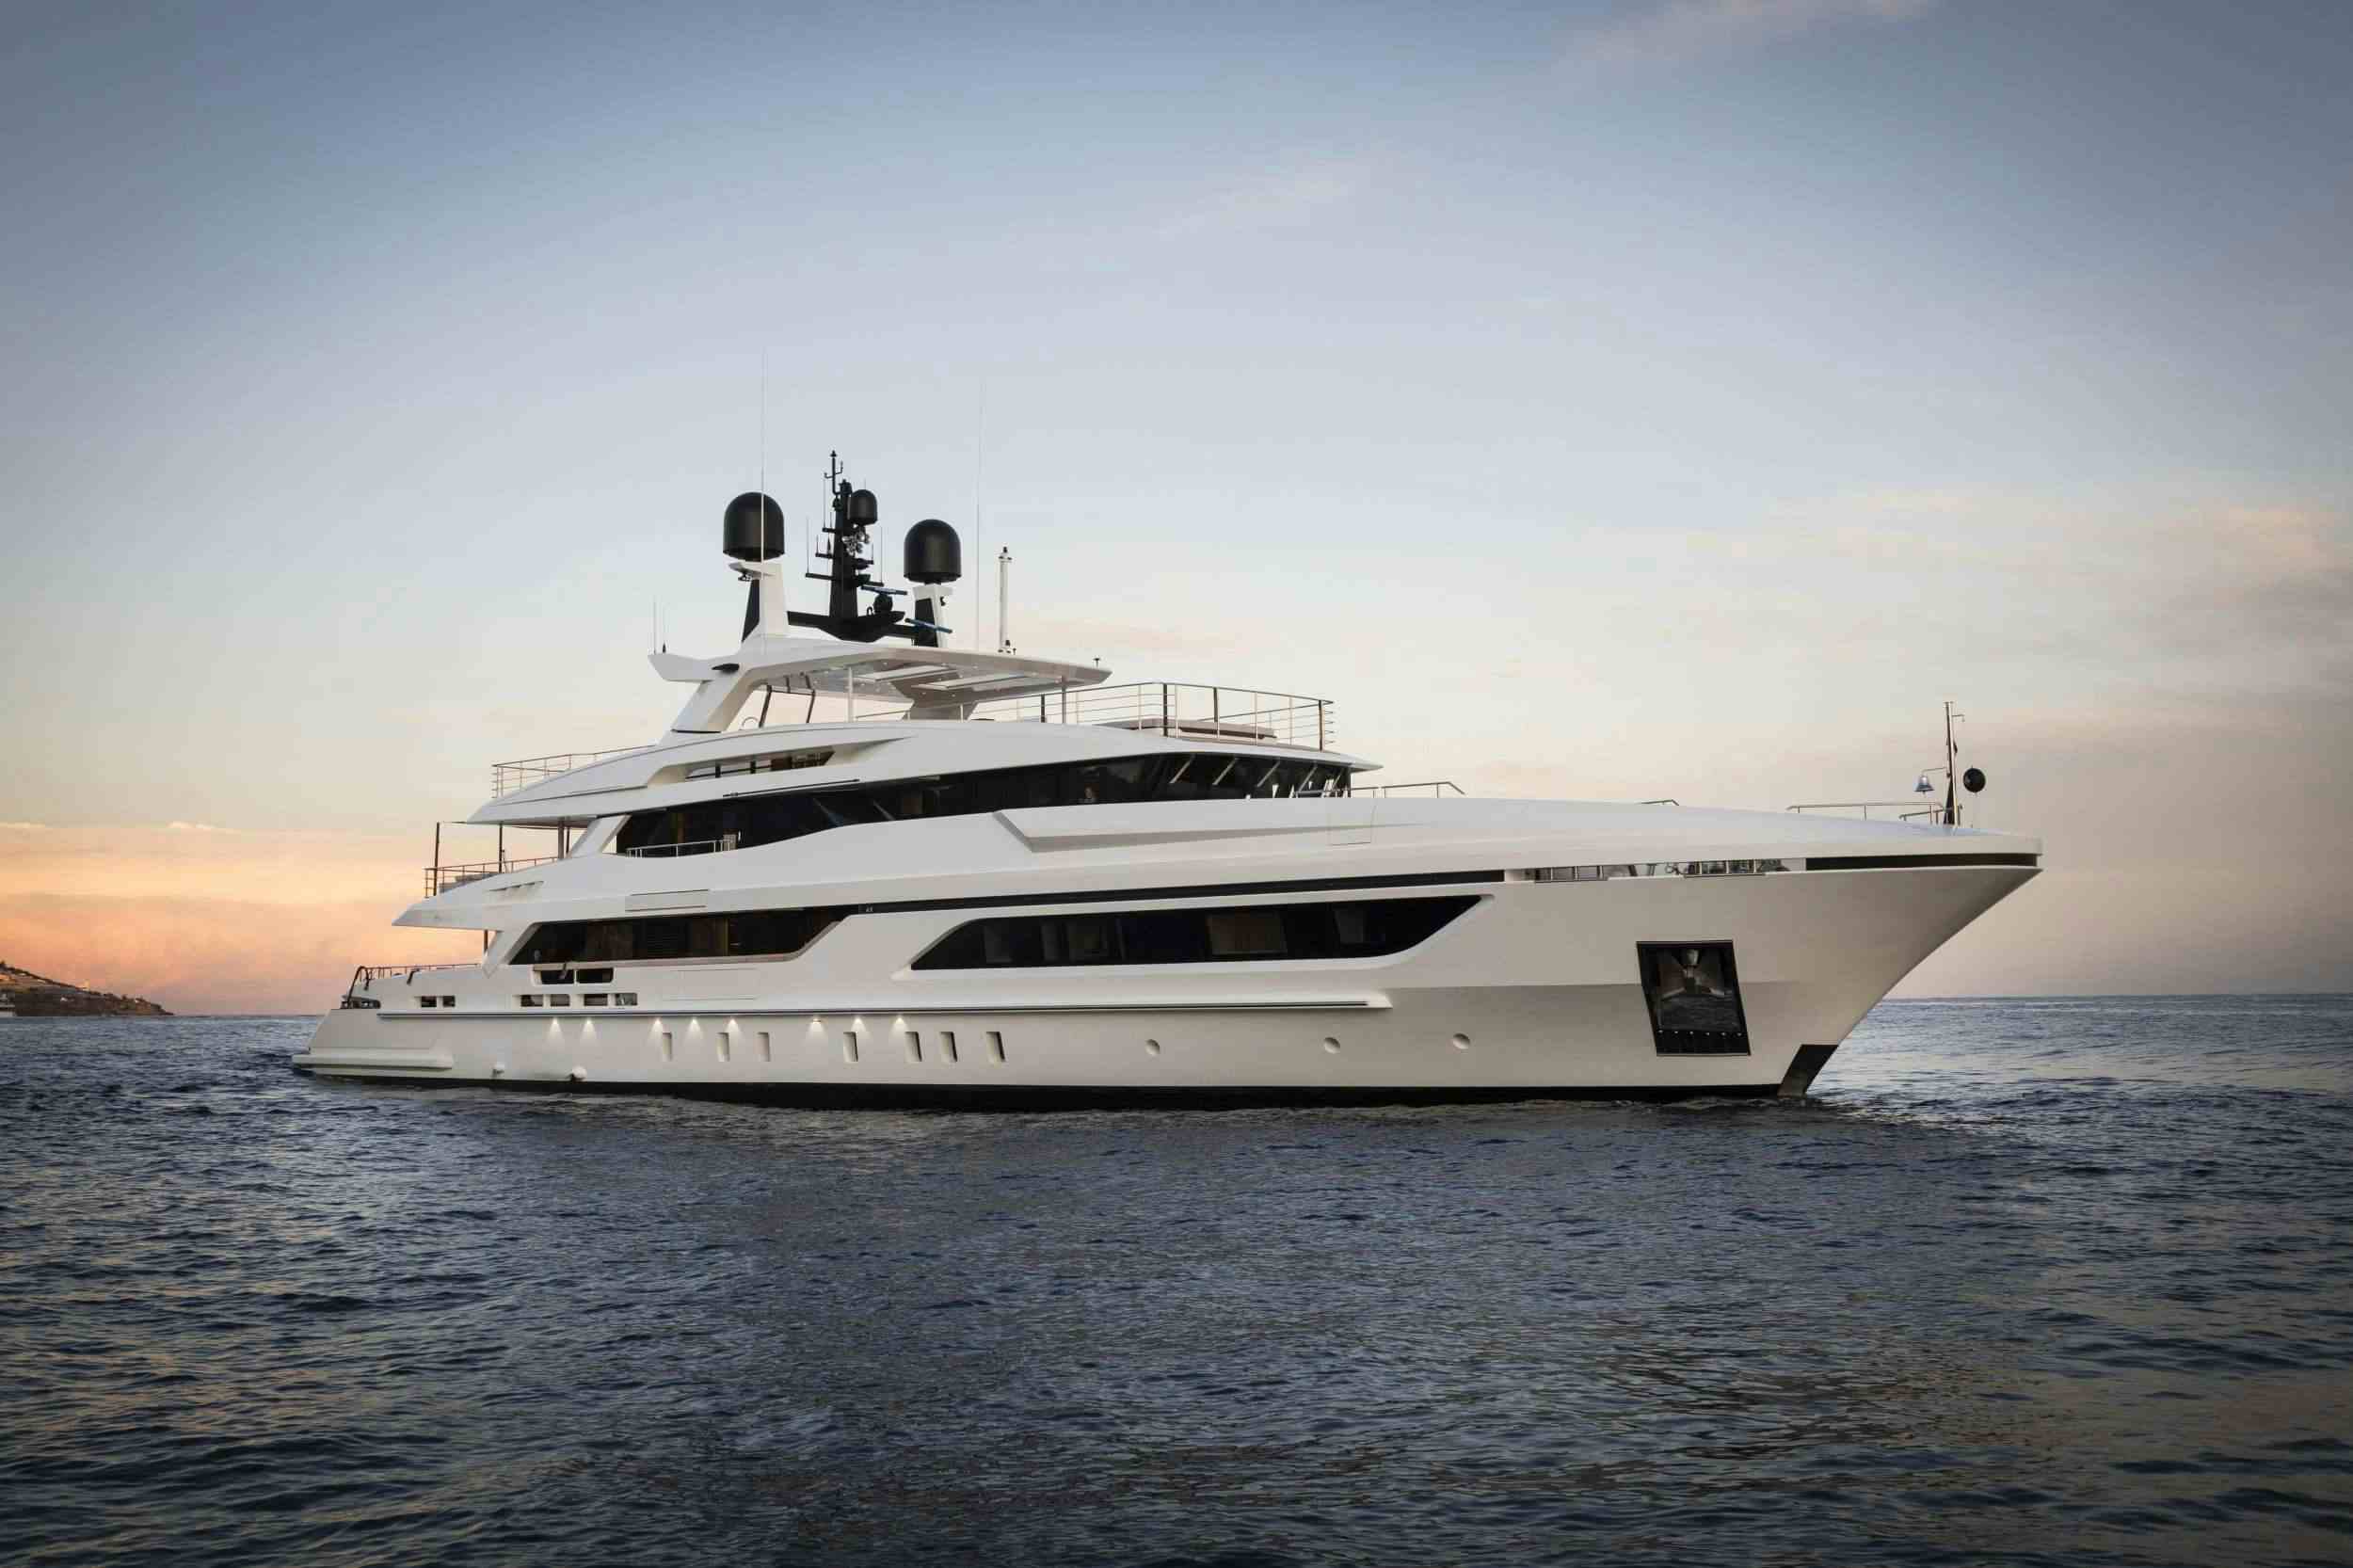 ANDIAMO - Yacht Charter Toulon & Boat hire in Fr. Riviera, Corsica & Sardinia 1